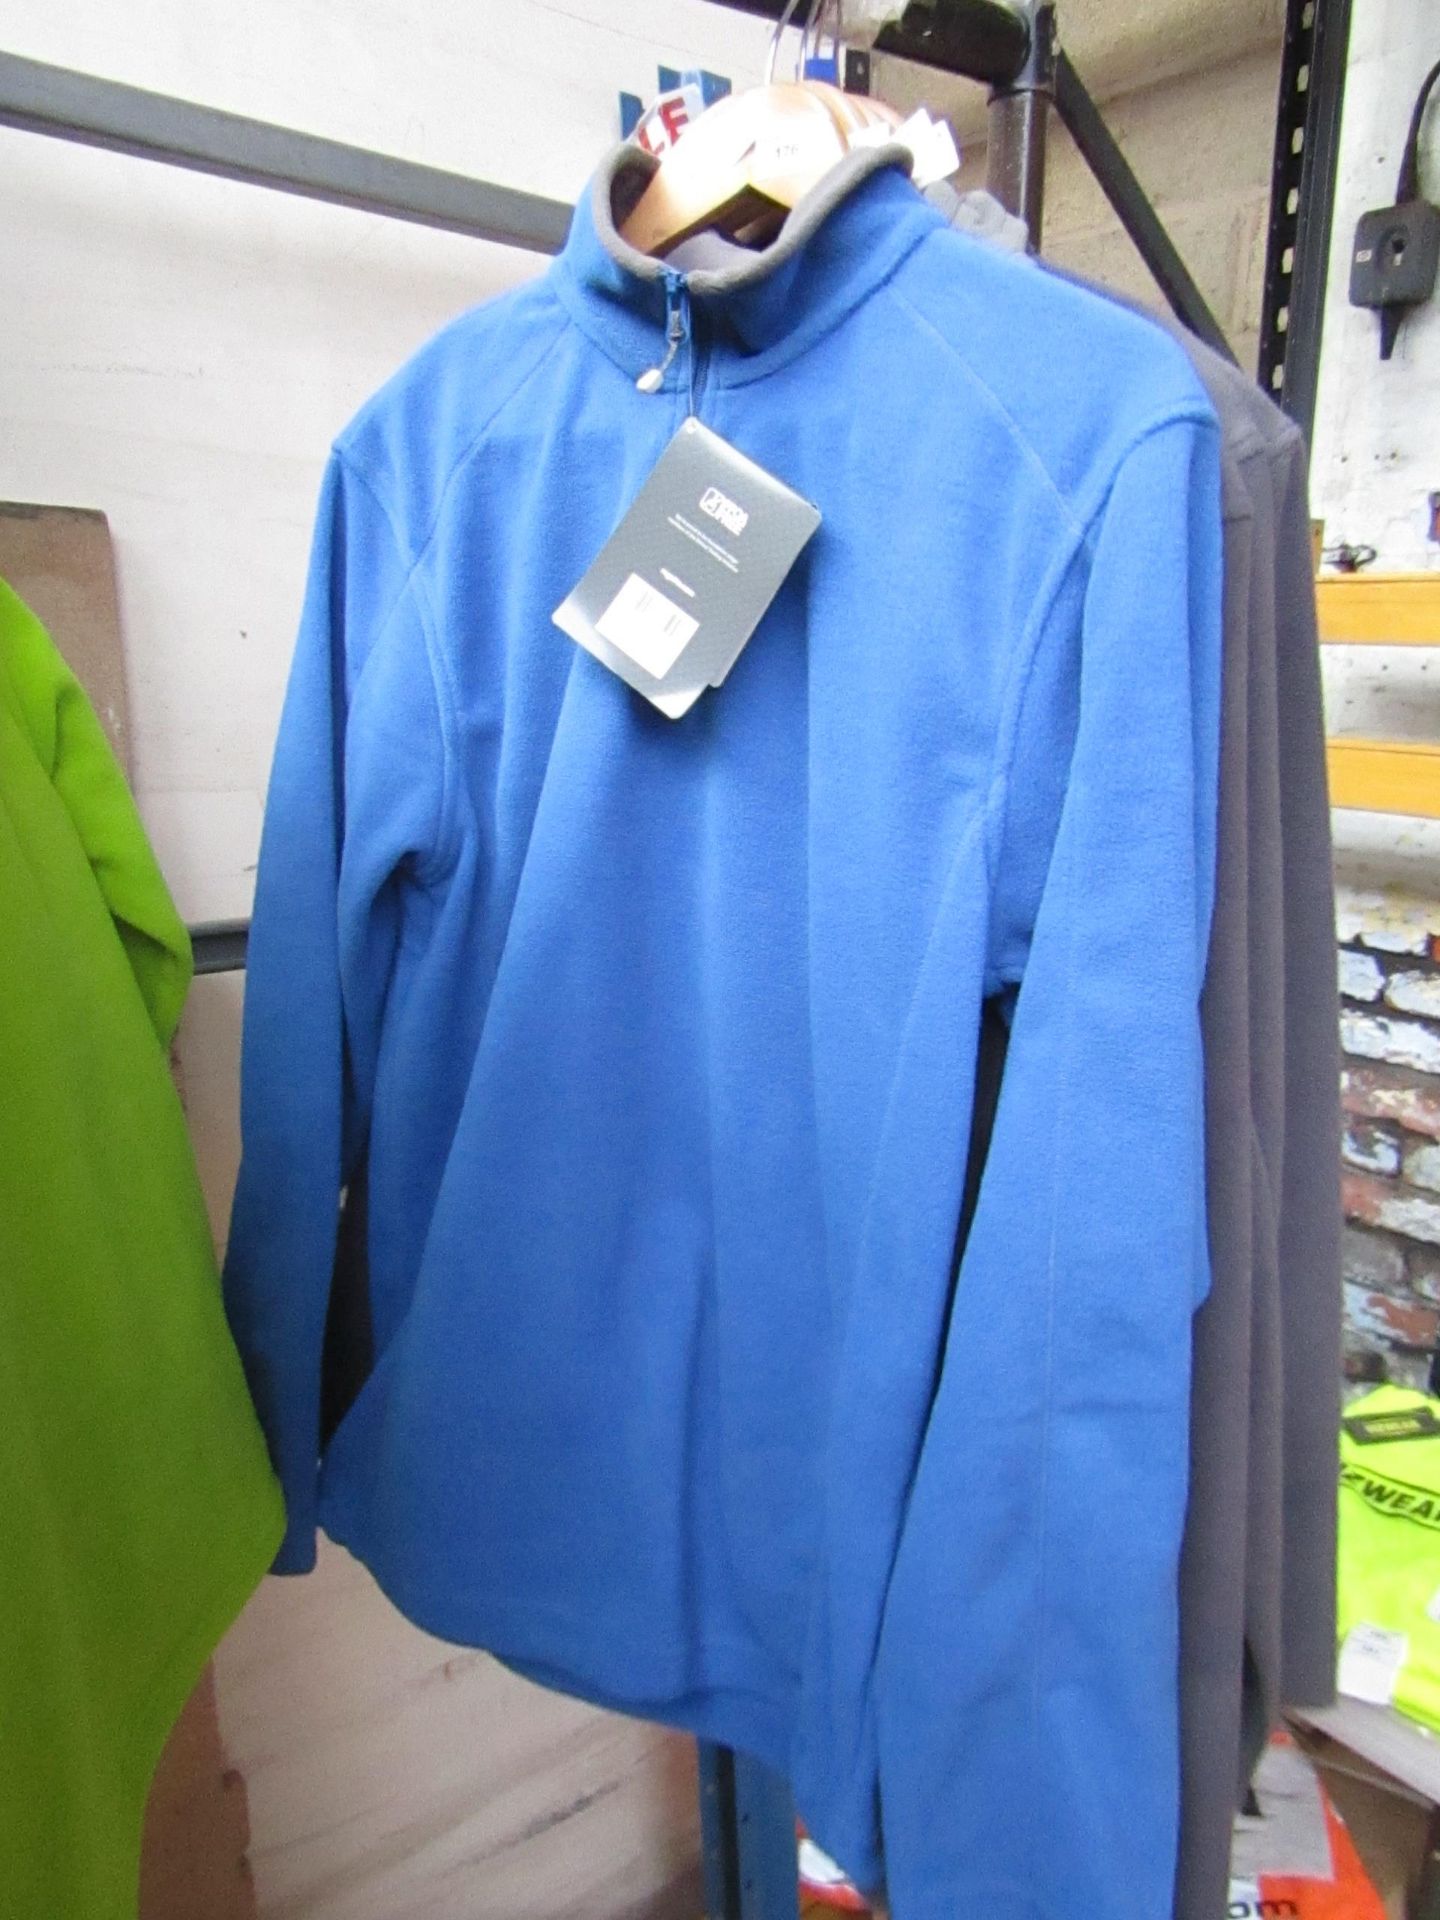 Men's Regatta Professional Fleece Oxford Blue/ Smoke. Size S. new in Packaging